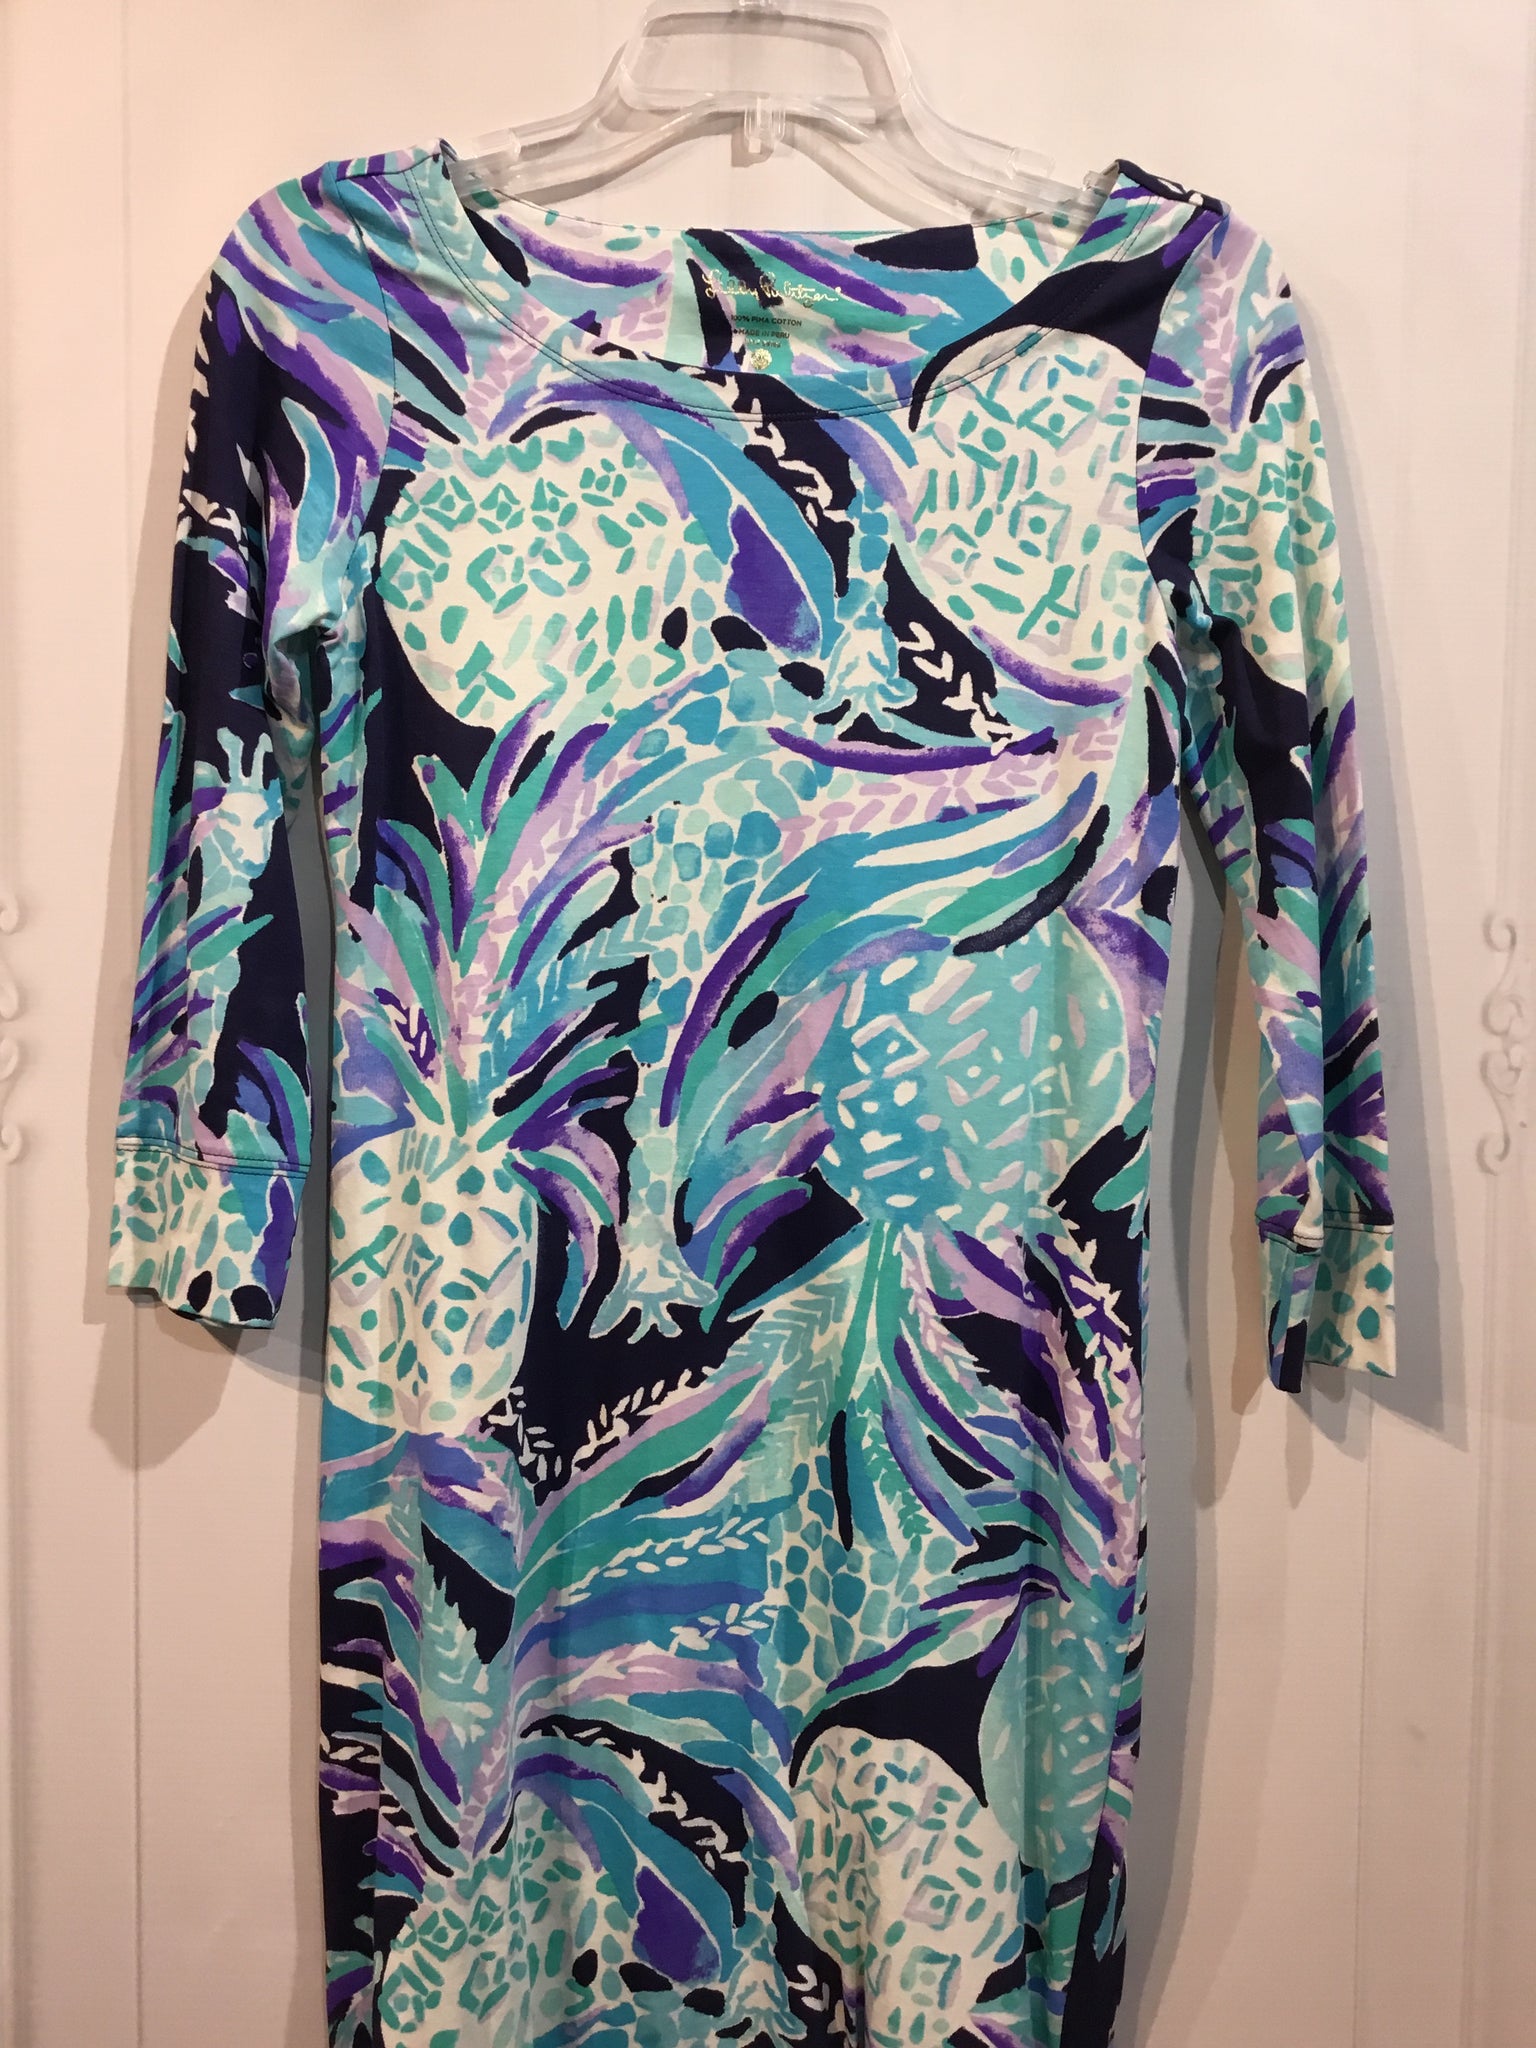 Lilly Pulitzer Size XS/0-2 Purple/Aqua/Teal Print Dress